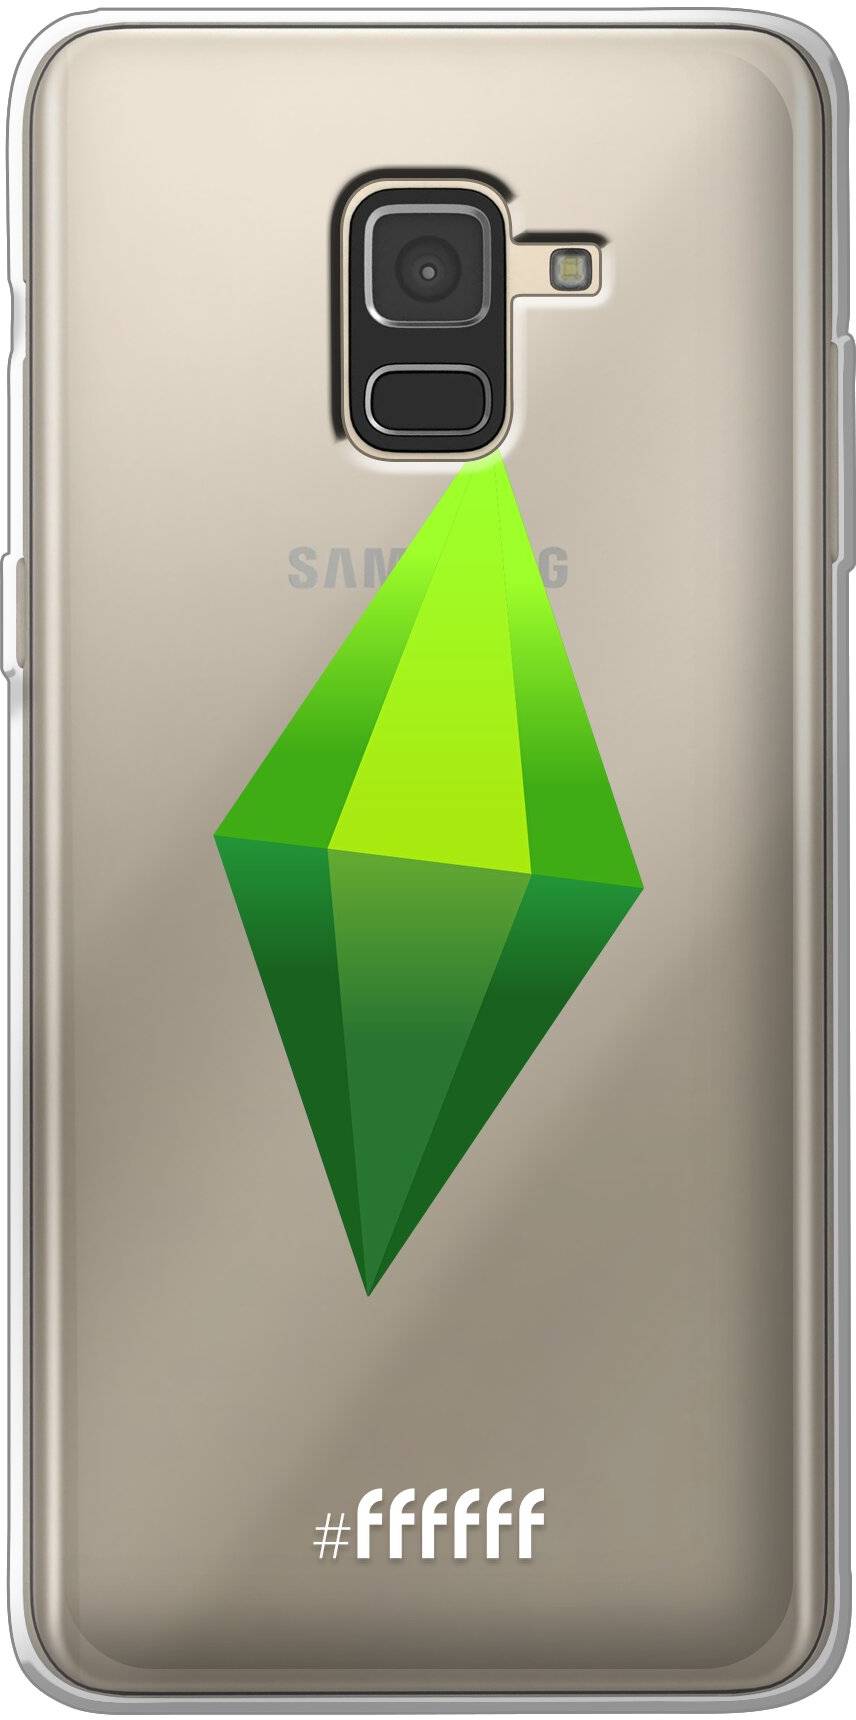 The Sims Galaxy A8 (2018)